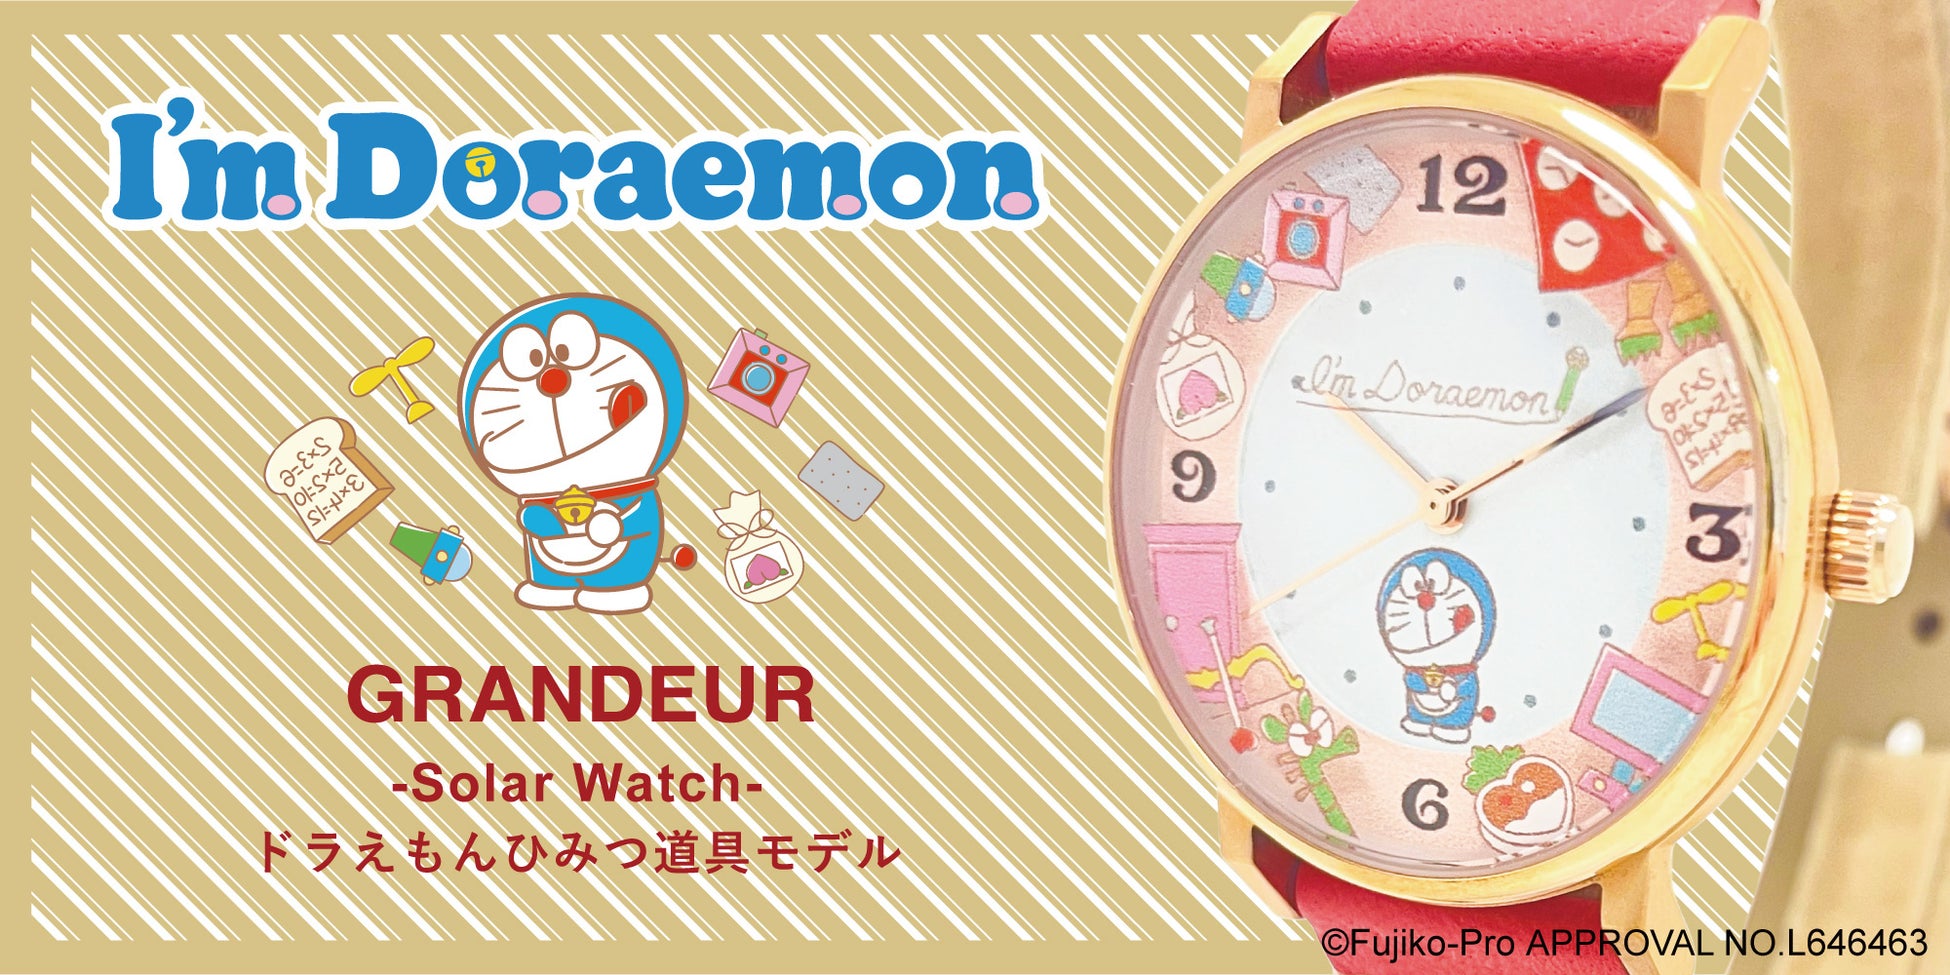 「GRANDEUR」のソーラーウォッチモデルから「I’m Doraemon」ひみつ道具モデルが登場！